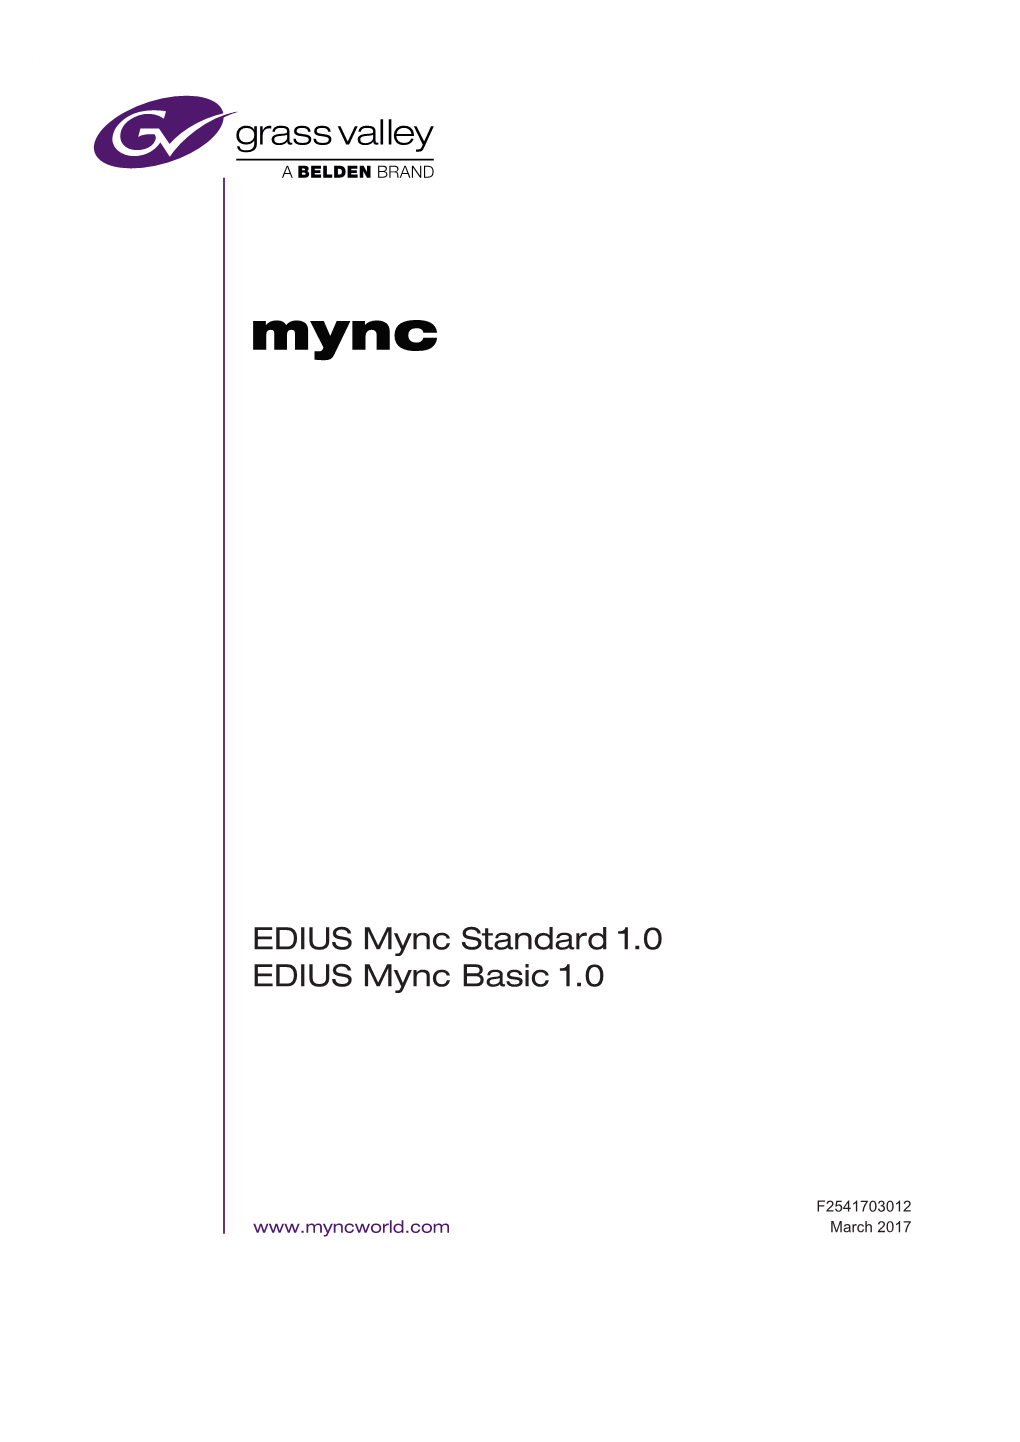 EDIUS Mync Standard 1.0 EDIUS Mync Basic 1.0